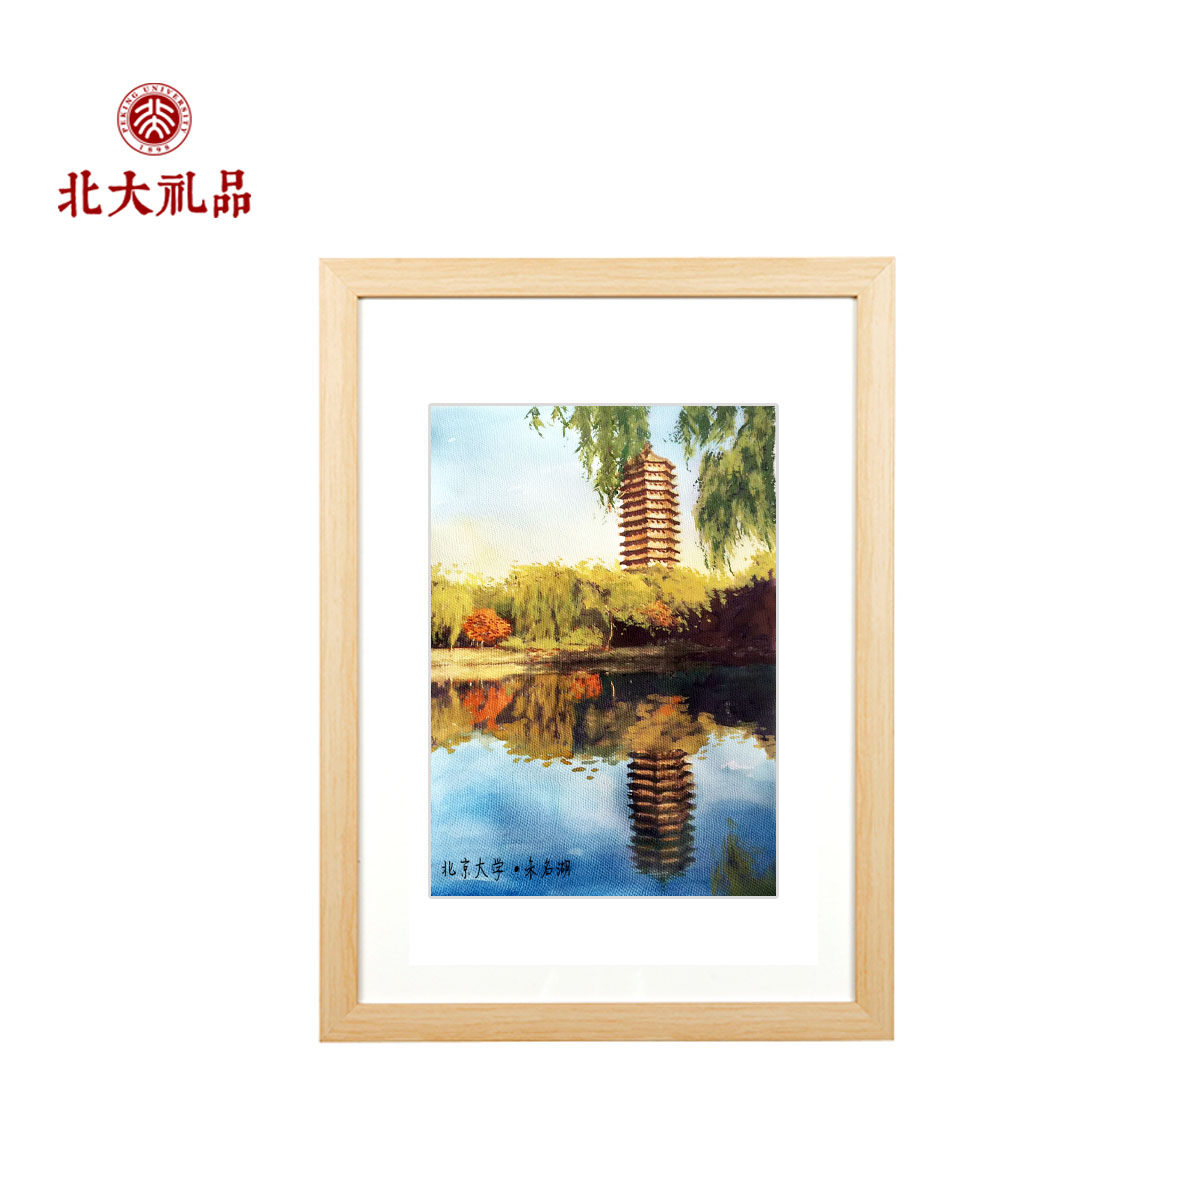 北京大学风景画 画框 北京大学纪念品 北大礼品 博雅塔手绘画装饰